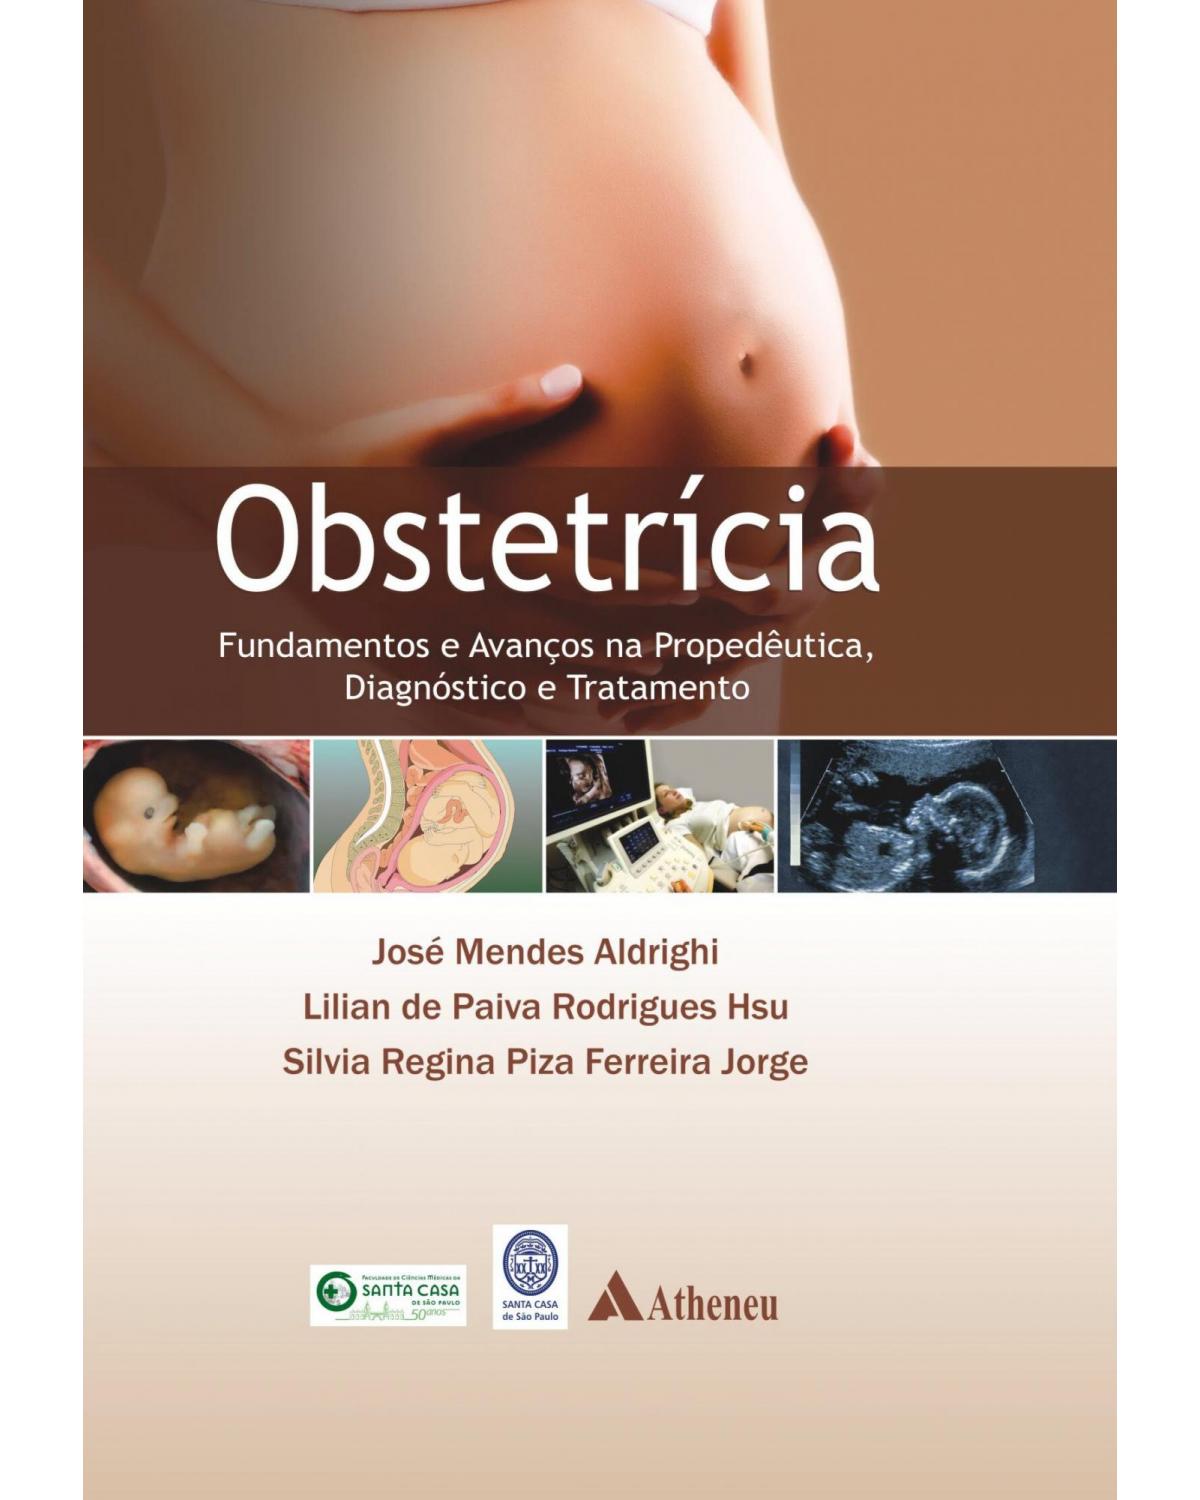 Obstetrícia - fundamentos e avanços na propedêutica, diagnóstico e tratamento - 1ª Edição | 2013